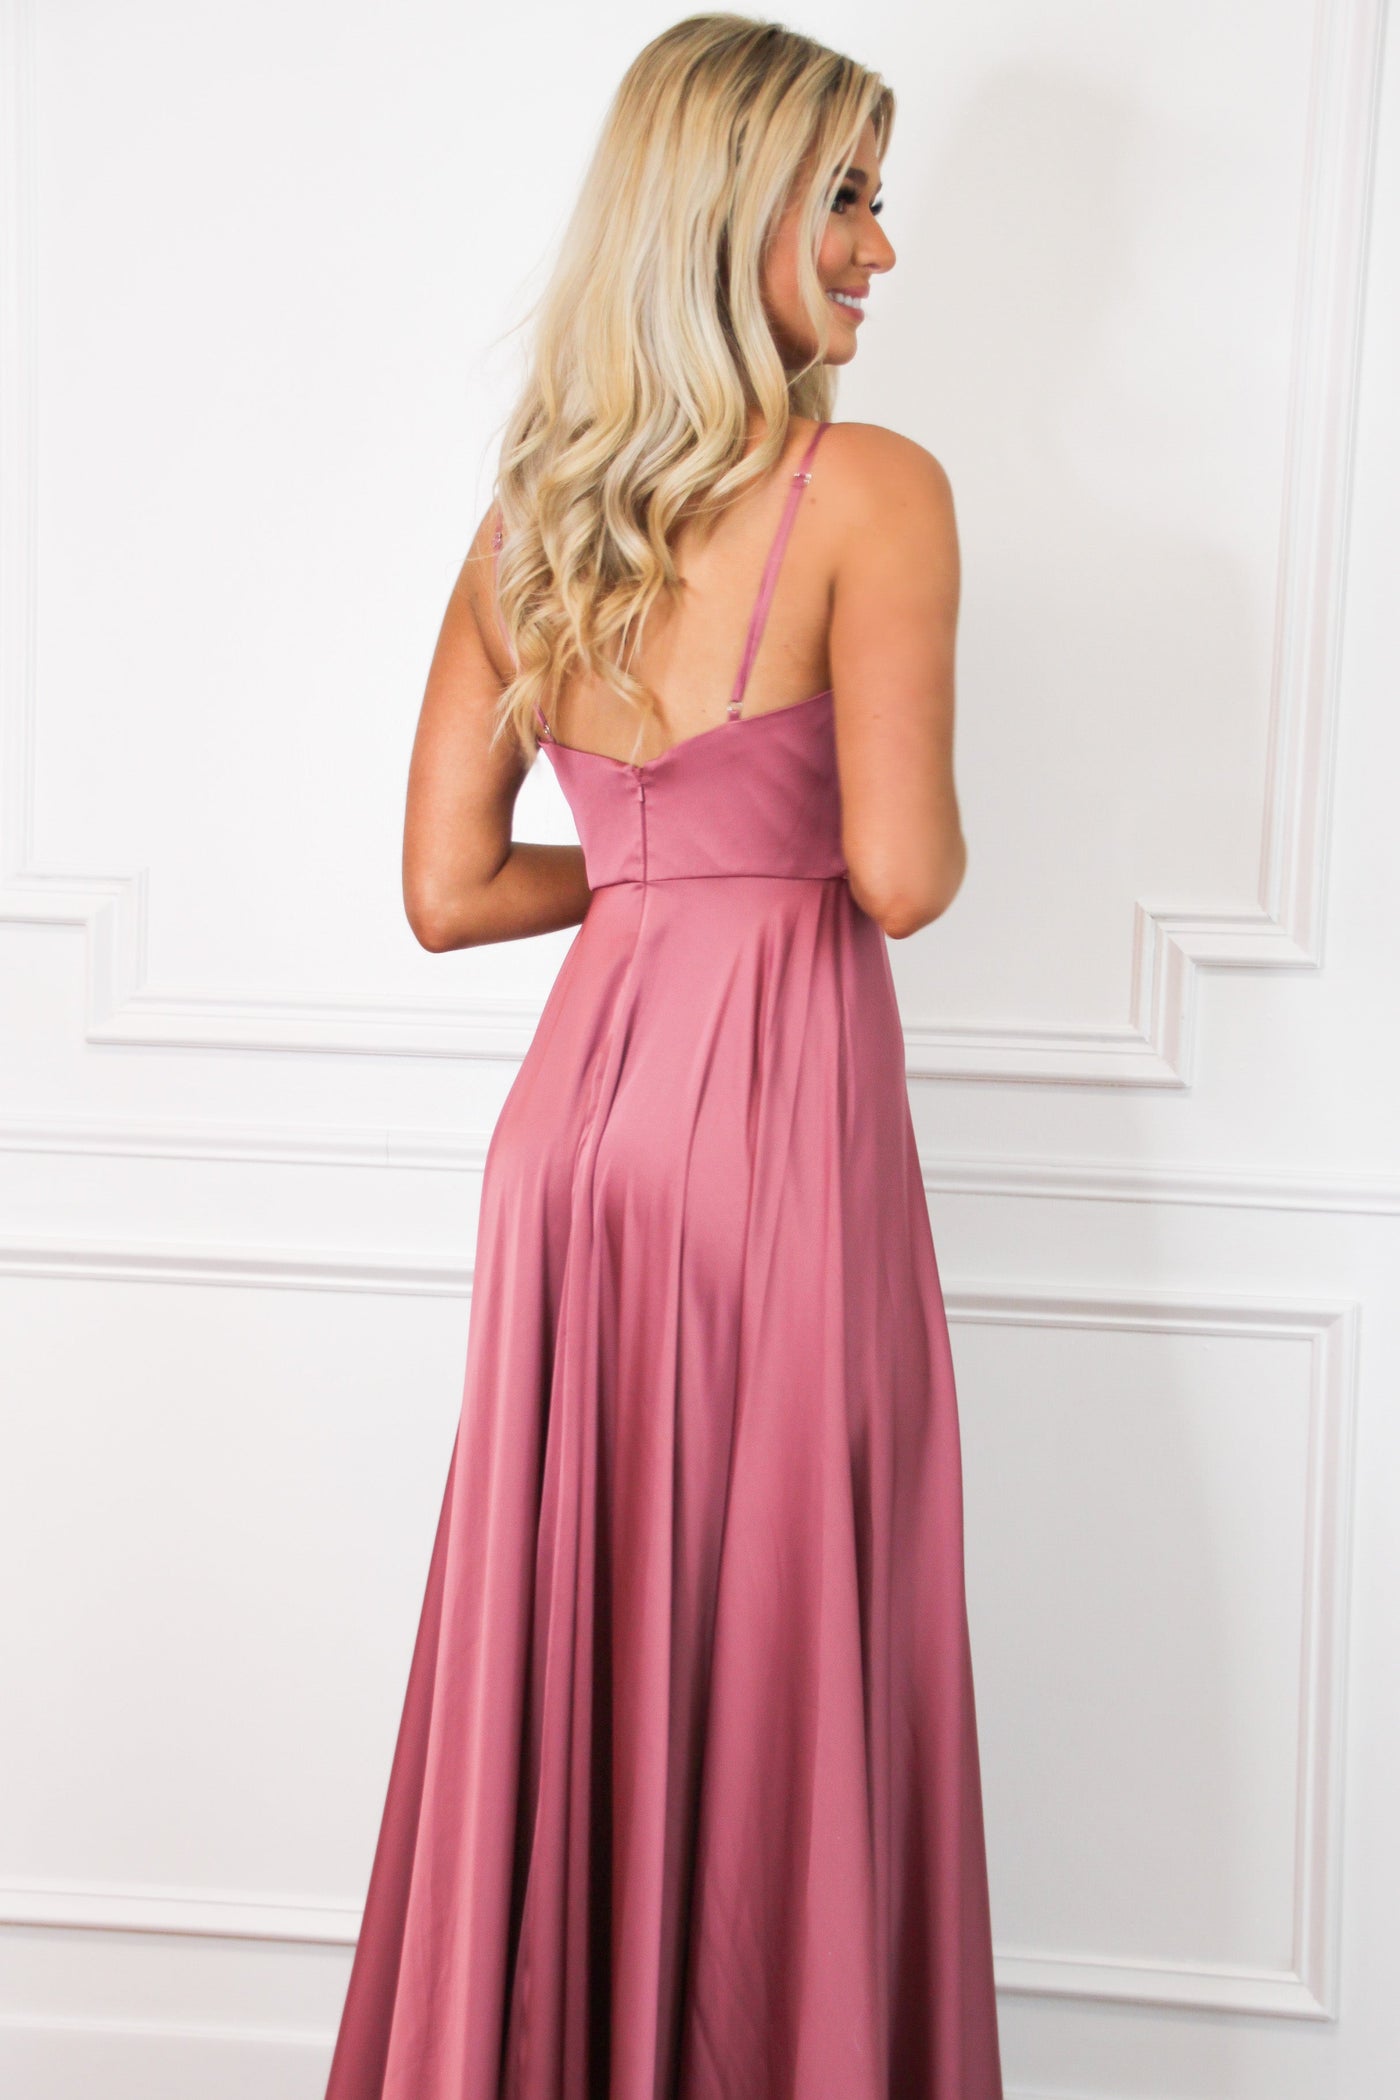 Ella Satin Slit Formal Dress: Rose - Bella and Bloom Boutique